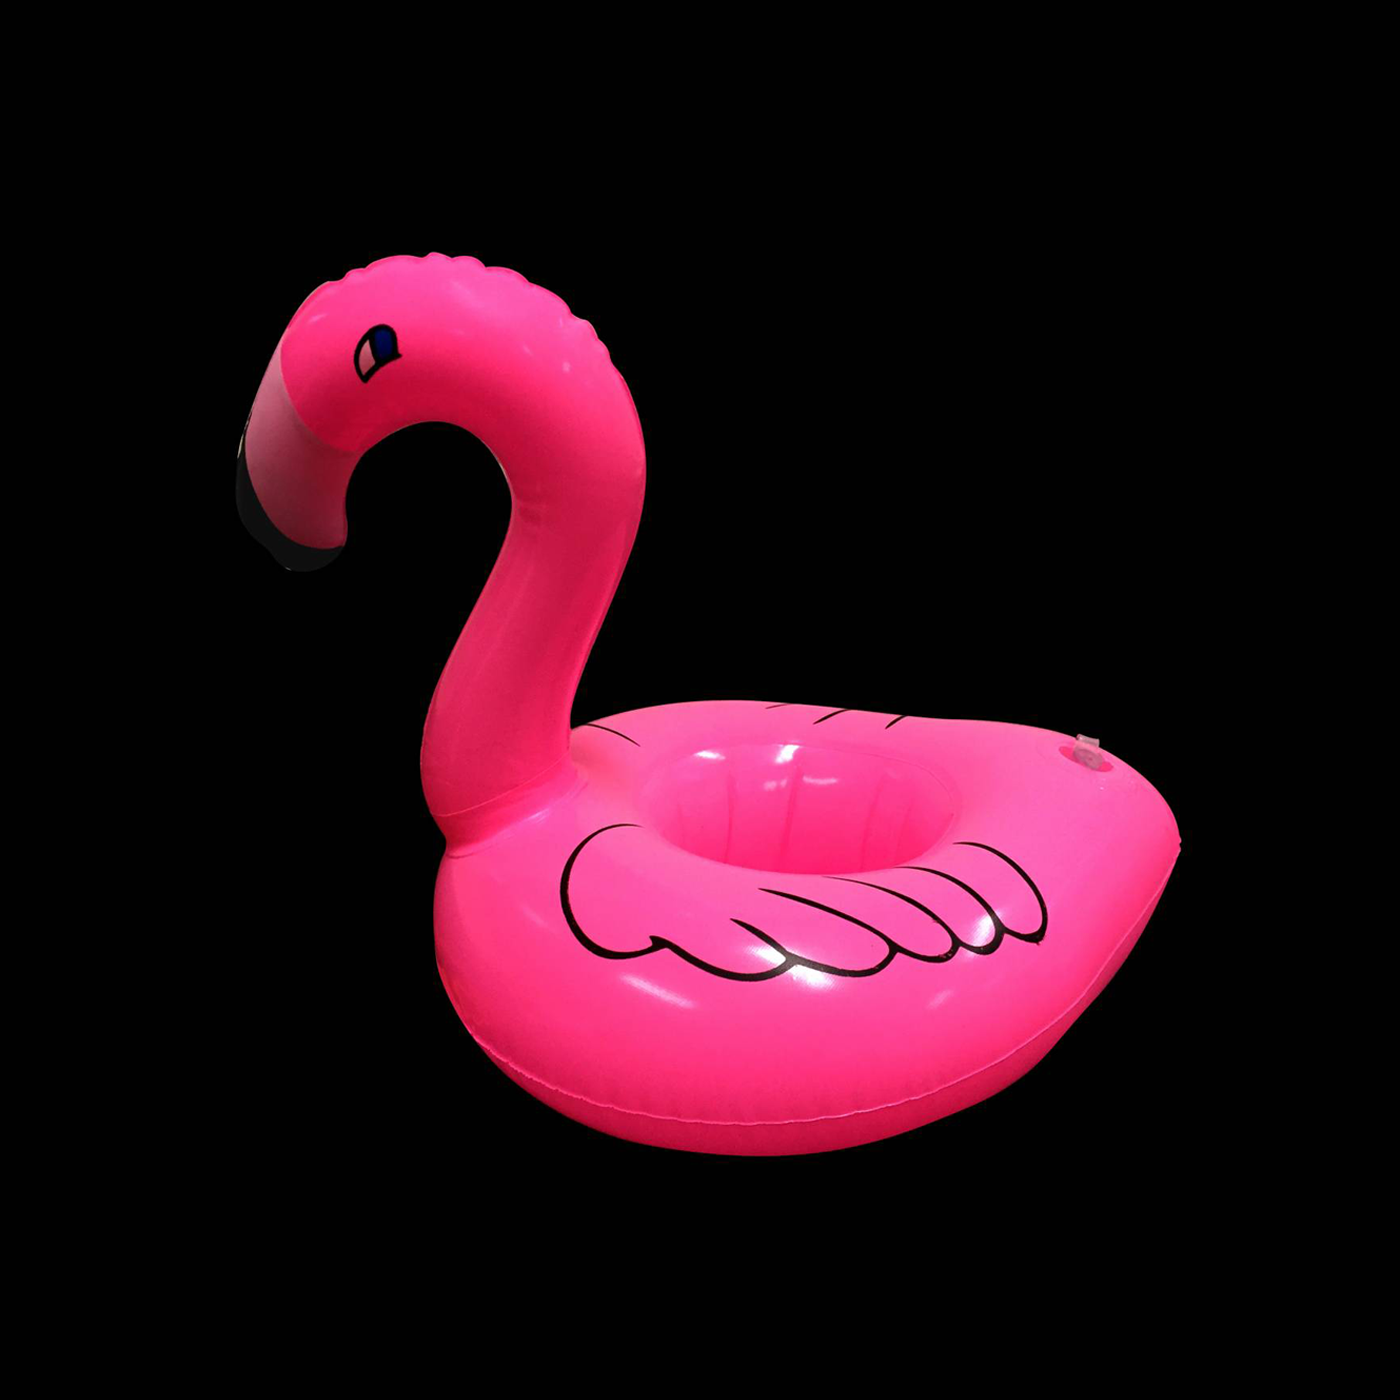 Opblaas bekerhouder flamingo kopen? | De Bazaar